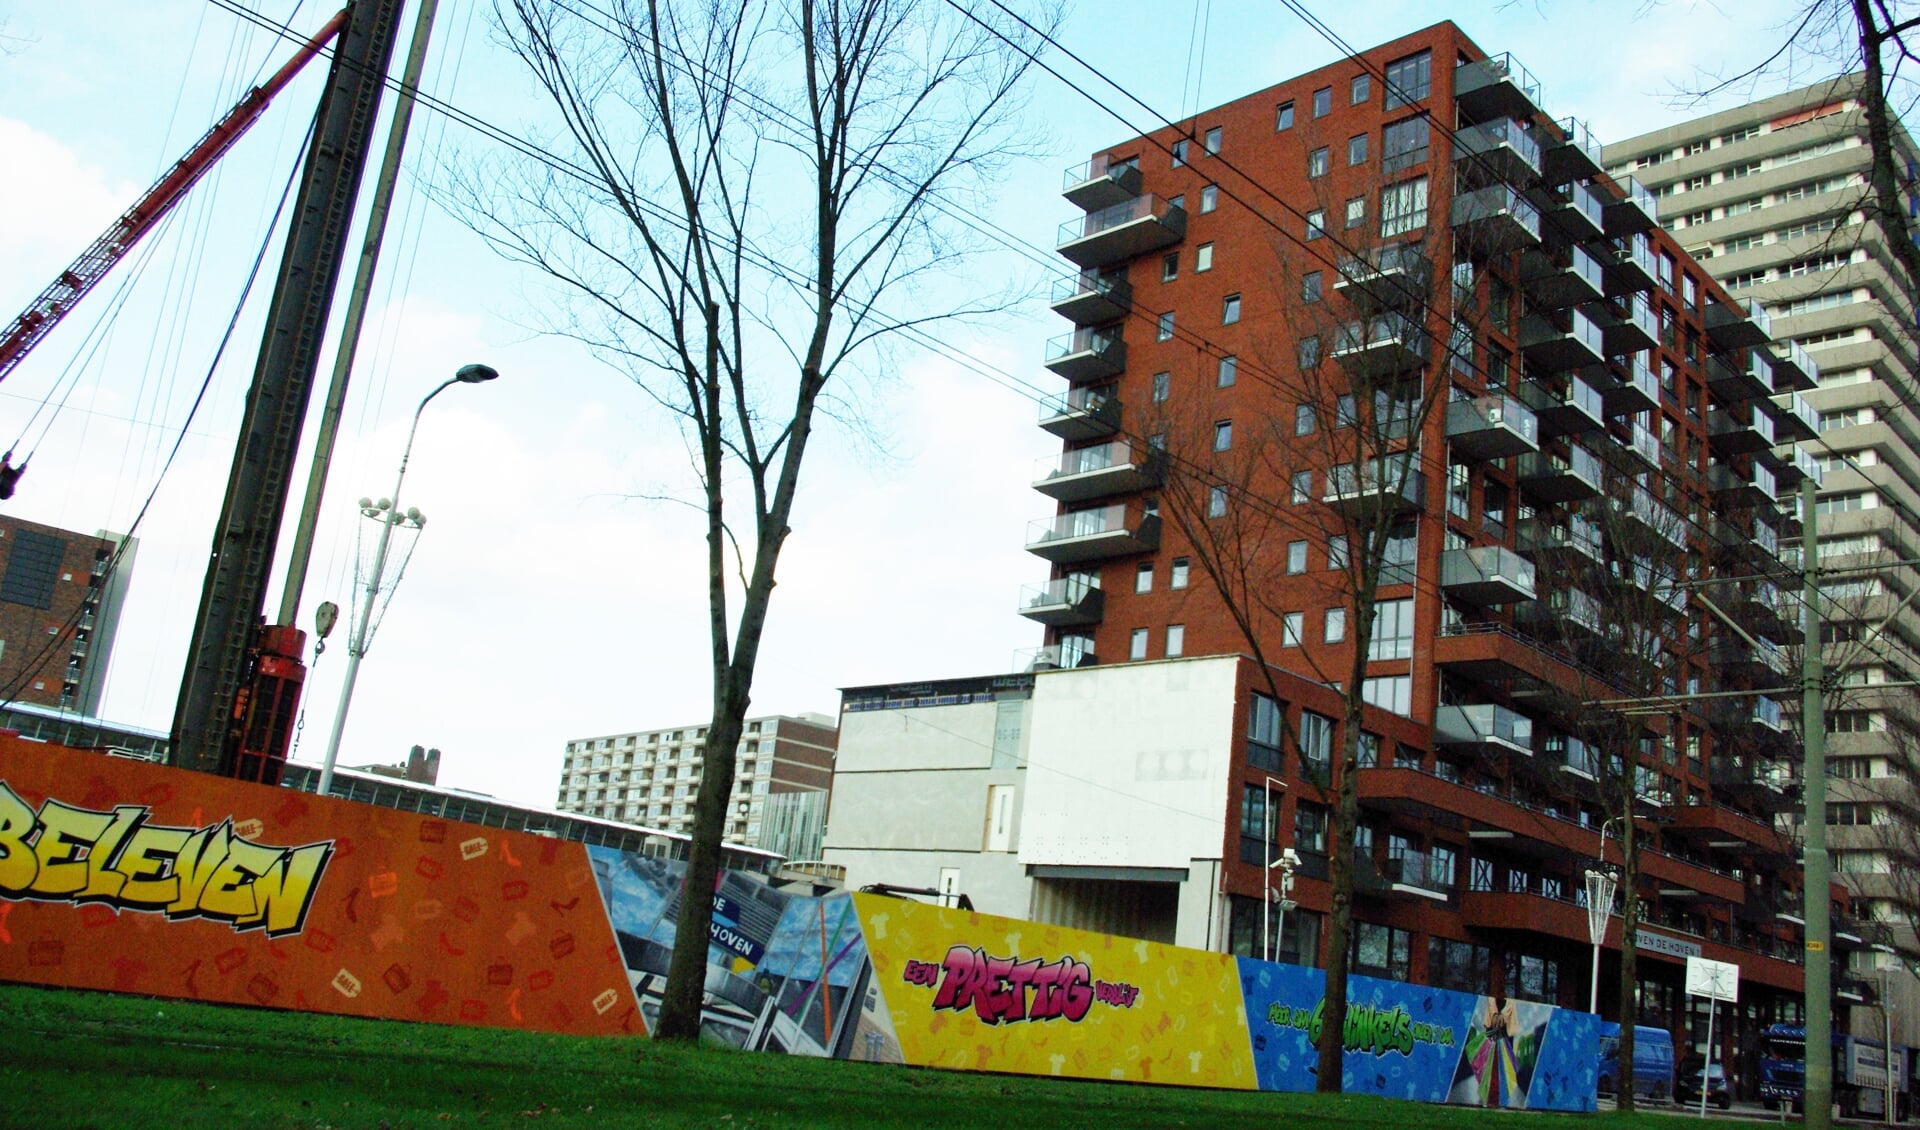 De Provincie Zuid-Holland hoopt dat komende jaren veel nieuwe woningen worden gerealiseerd in stedelijk gebied, zoals recent is gebeurd met de bouw van de nieuwe woontoren ‘Boven de Hoven’. (foto: Jesper Neeleman)